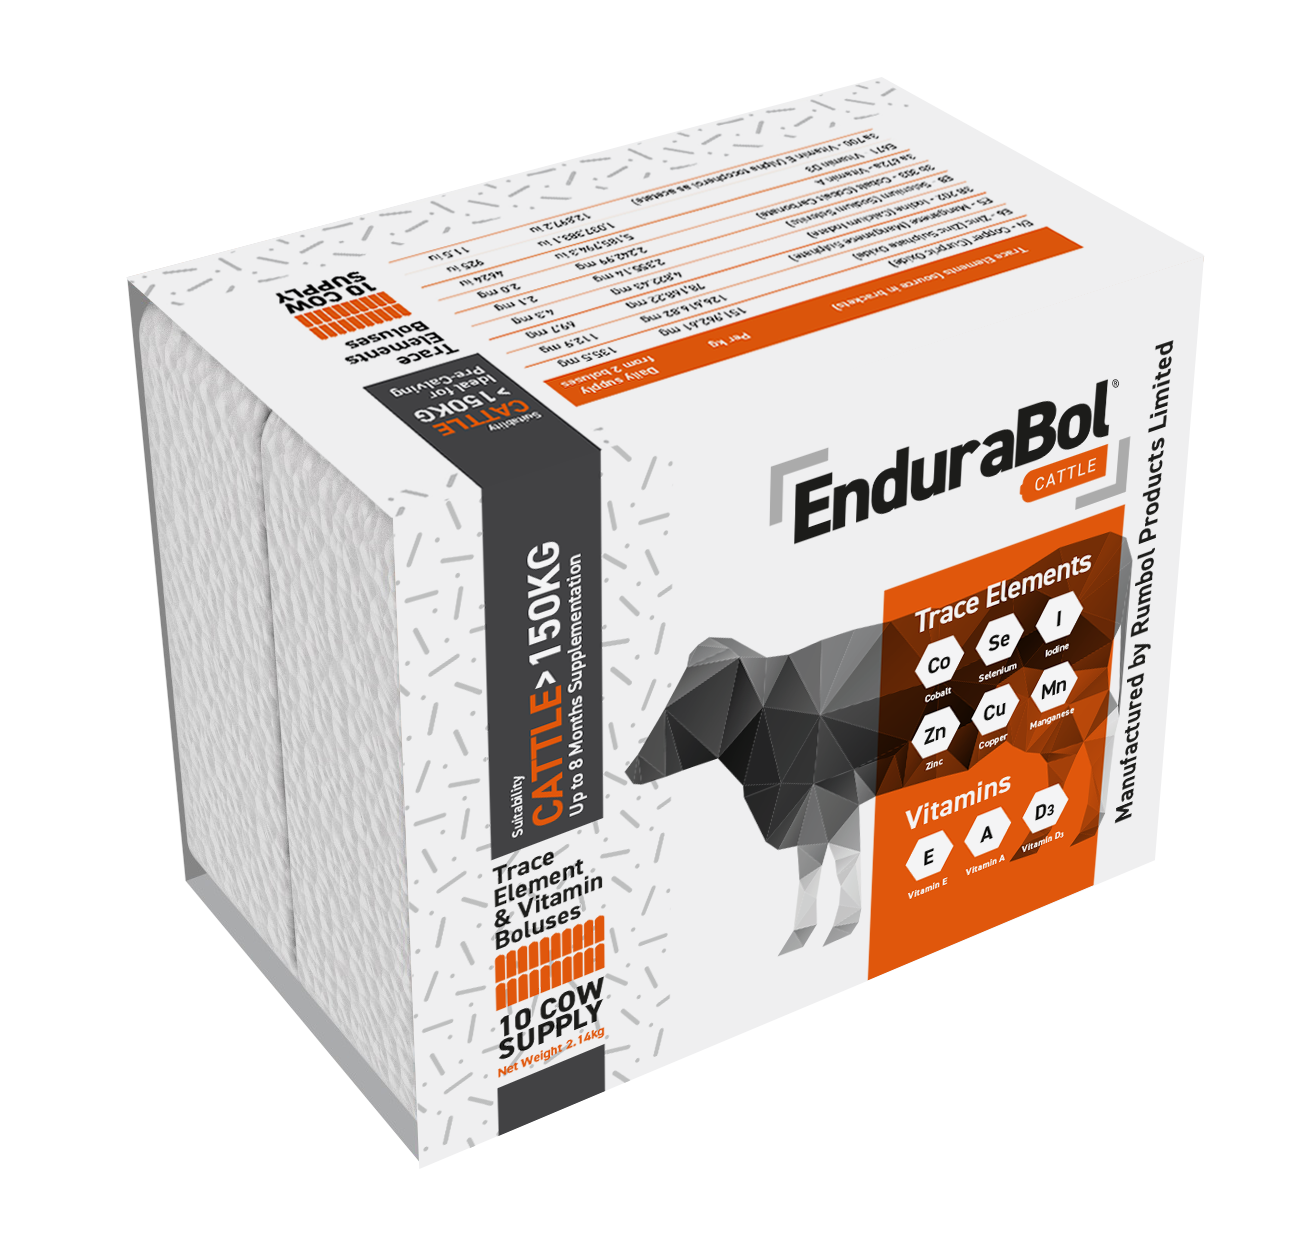 Endurabol Cattle Bolus 20 Pack